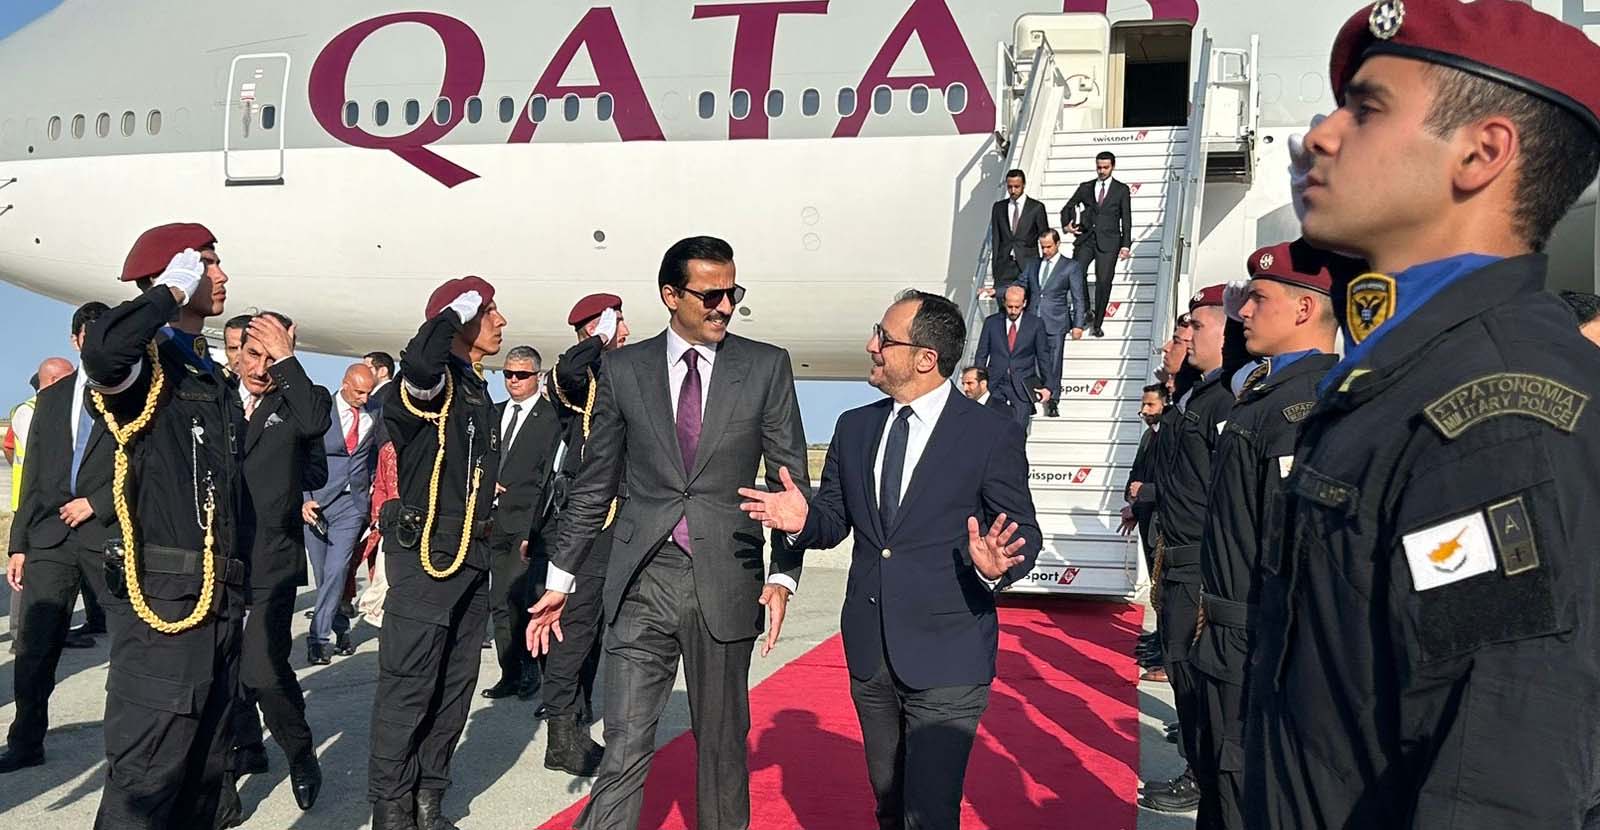 Η Κυβέρνηση Χριστοδουλίδη ανοίγει και νέο δίαυλο επικοινωνίας με τον Αραβικό κόσμο - Στην Κύπρο ο Εμίρης του Κατάρ